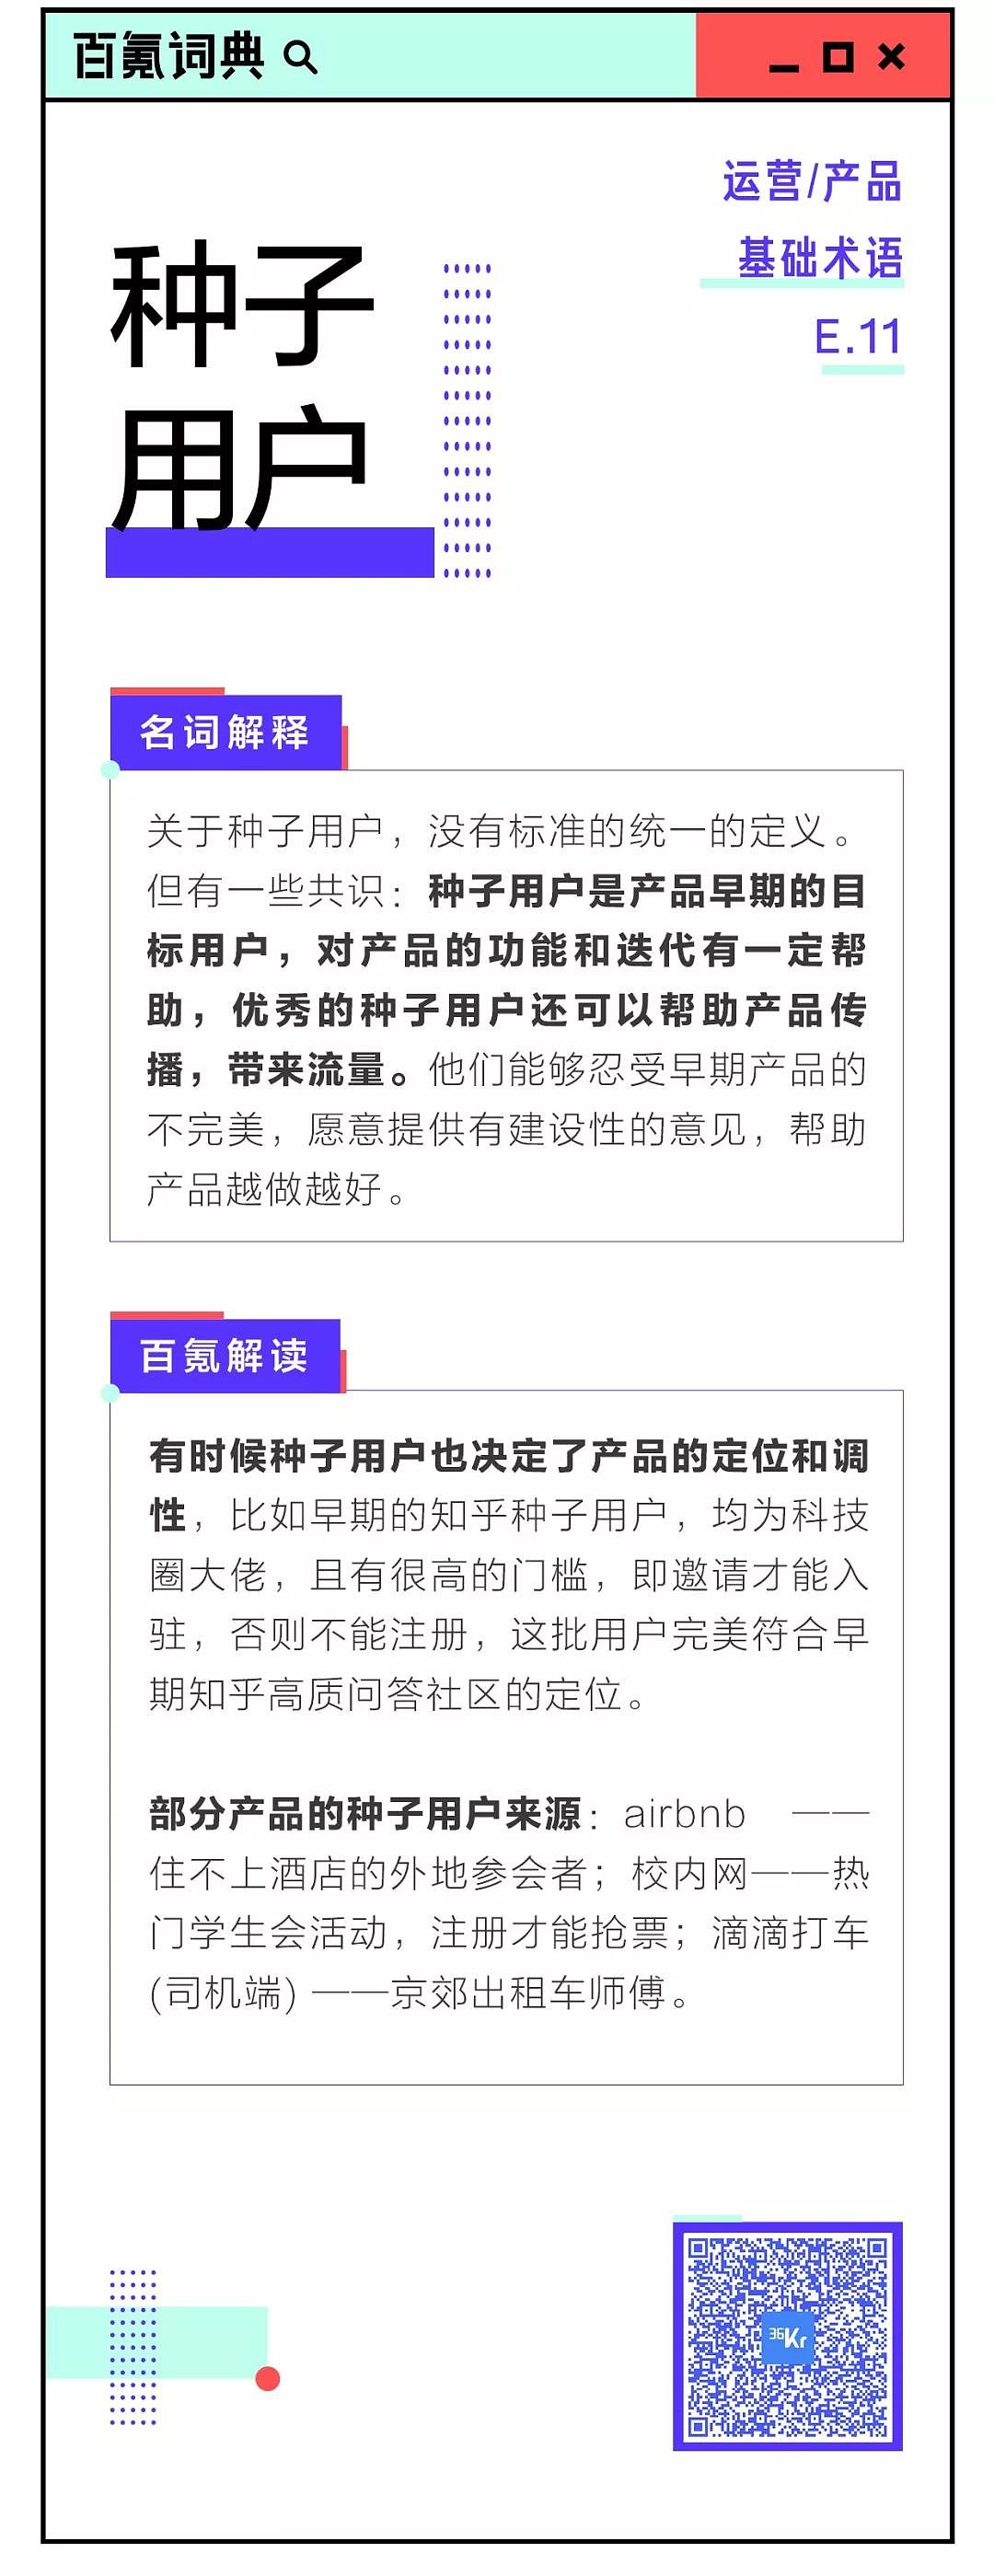 8点1氪：腾讯推出微信车载版本；传贾跃亭将还国内债务；三星苹果因手机辐射超标被诉讼 - 12